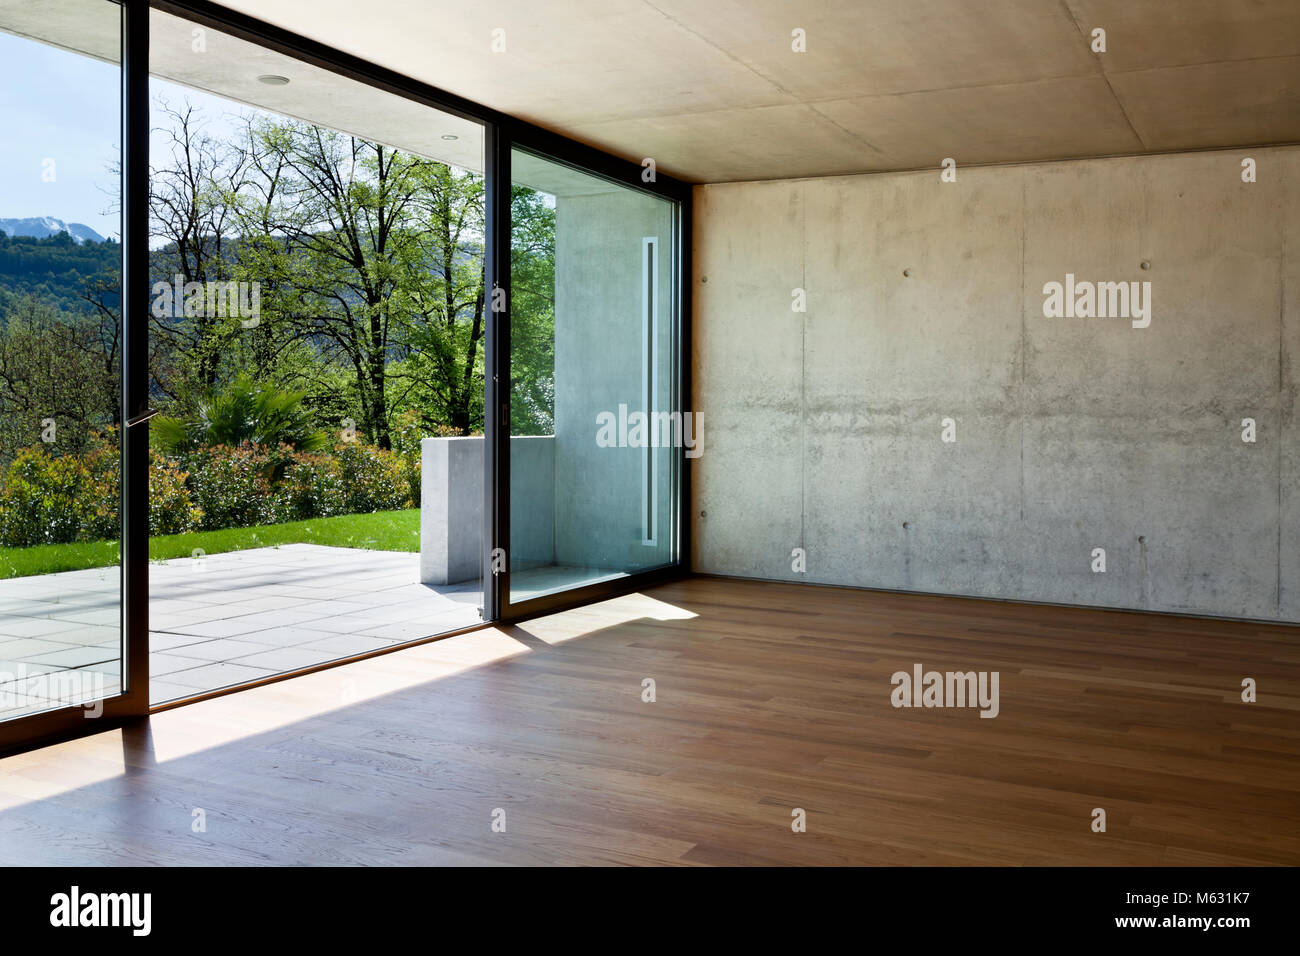 Maison moderne en béton avec plancher de bois franc, grande fenêtre Banque D'Images